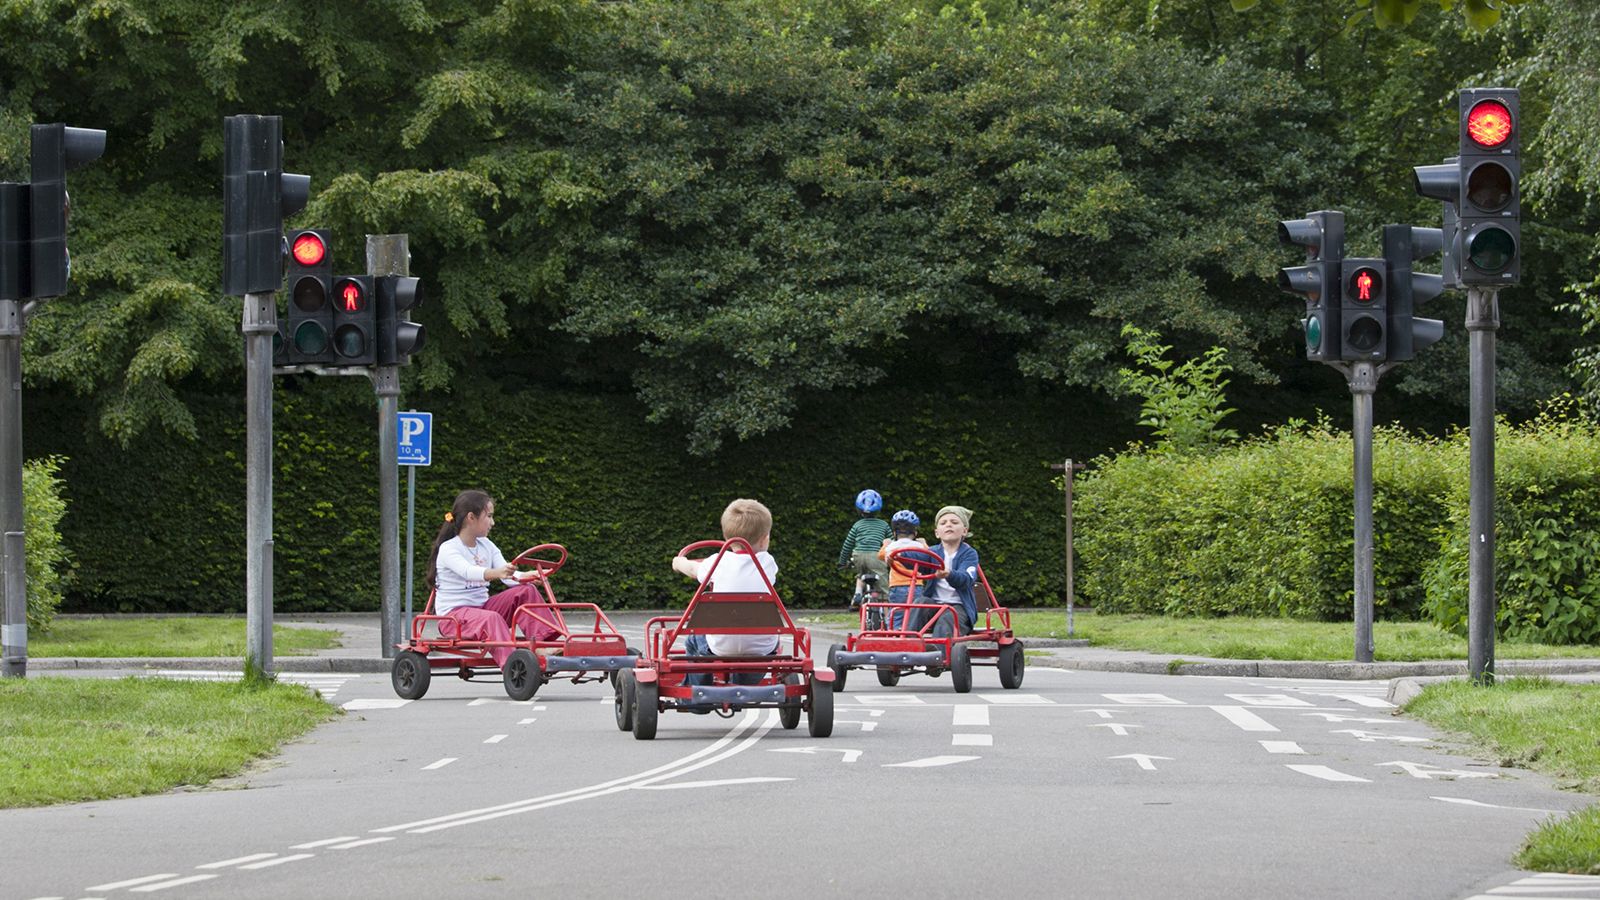 Børn leger i mooncarts på trafiklegeplads